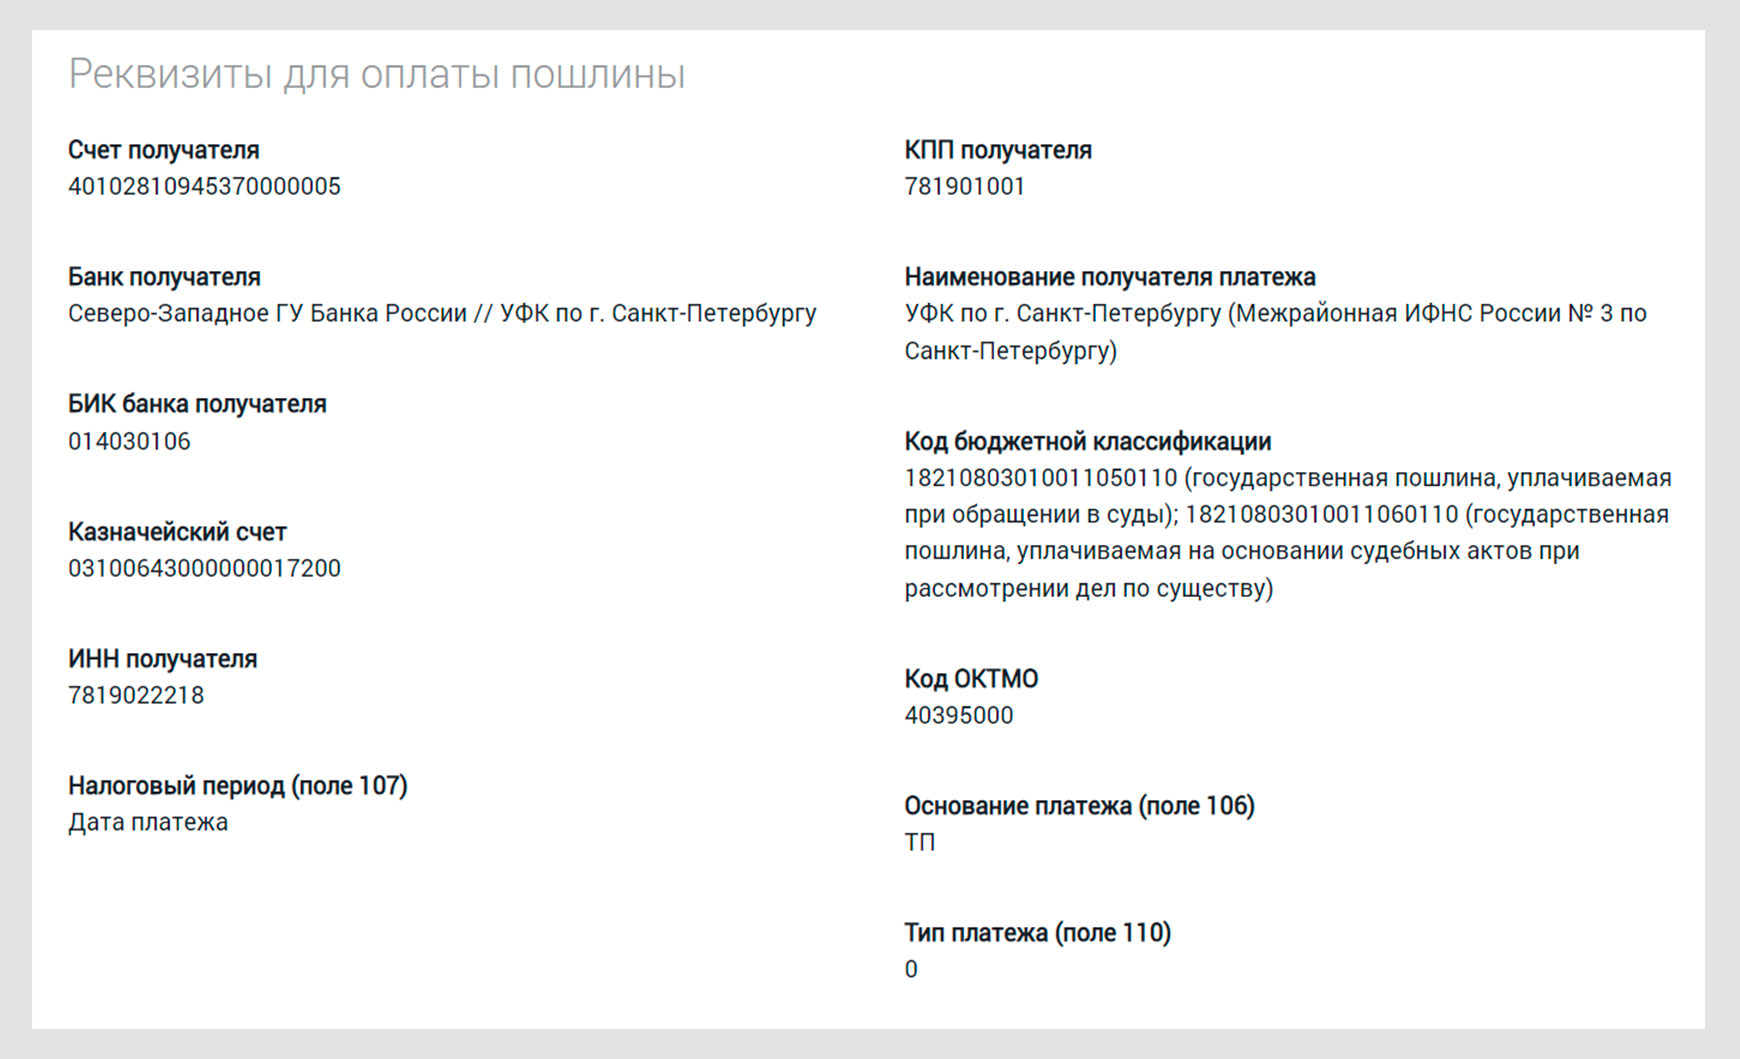 Реквизиты для оплаты пошлины по 158 судебному участку СПб.